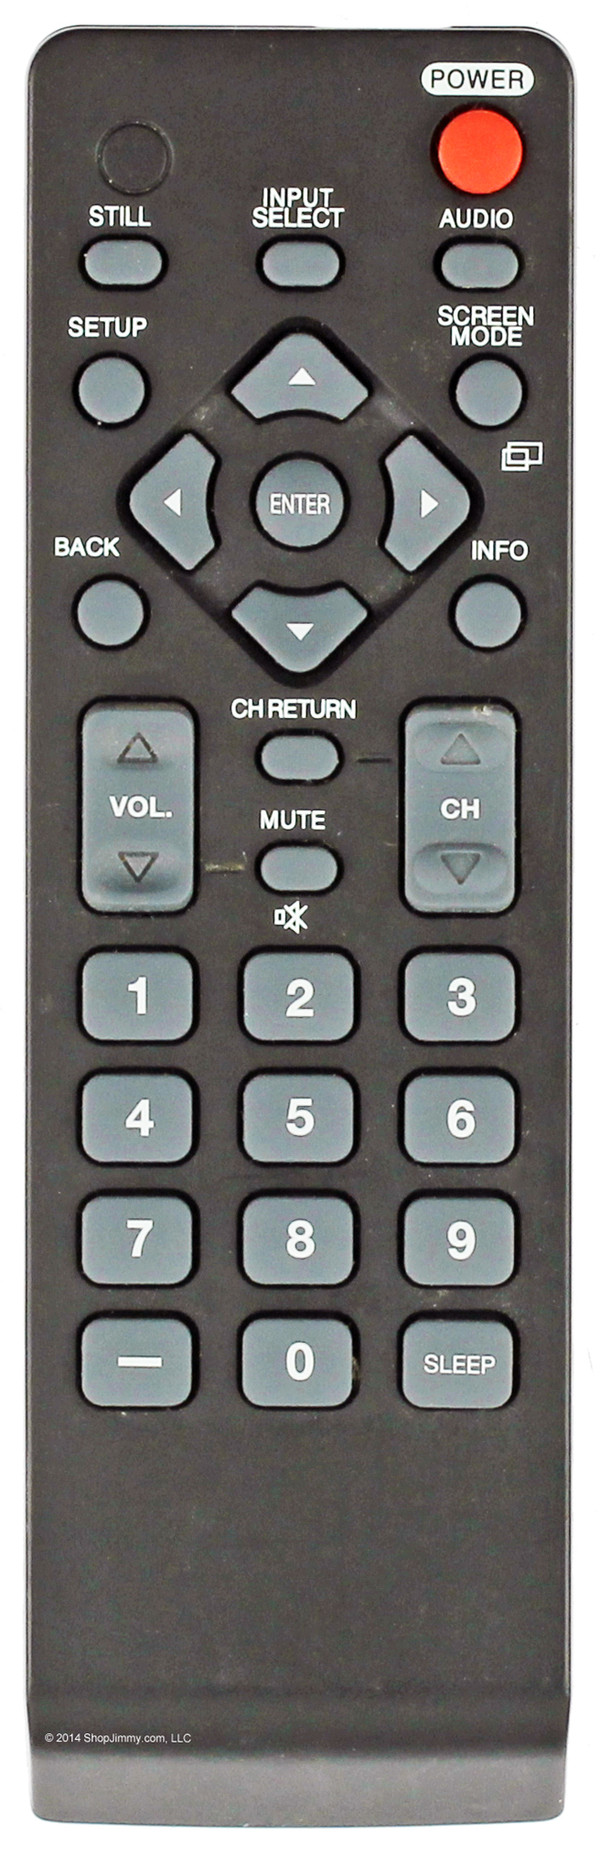 NH000UD Remote Control